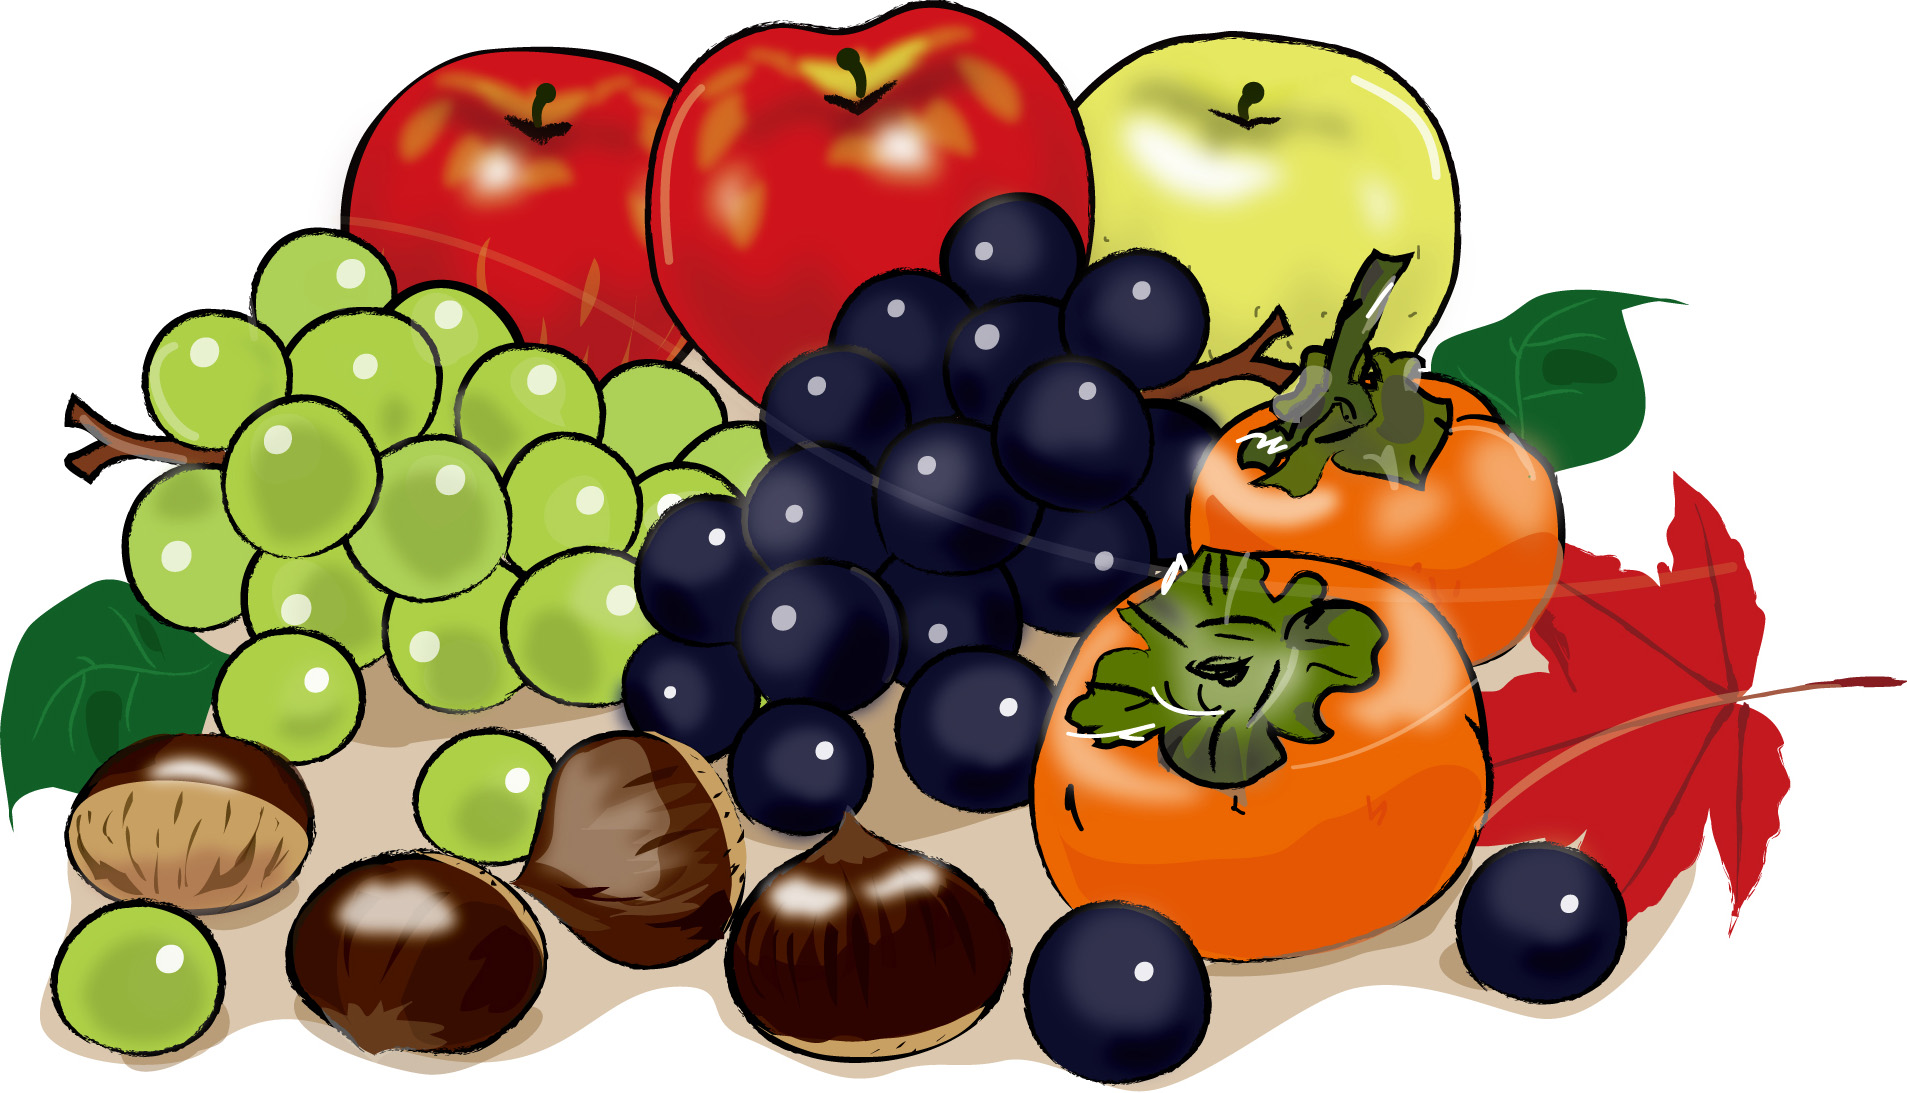 秋の印刷用イラスト素材 秋 食べ物の素材 秋の果物1 ダウンロード